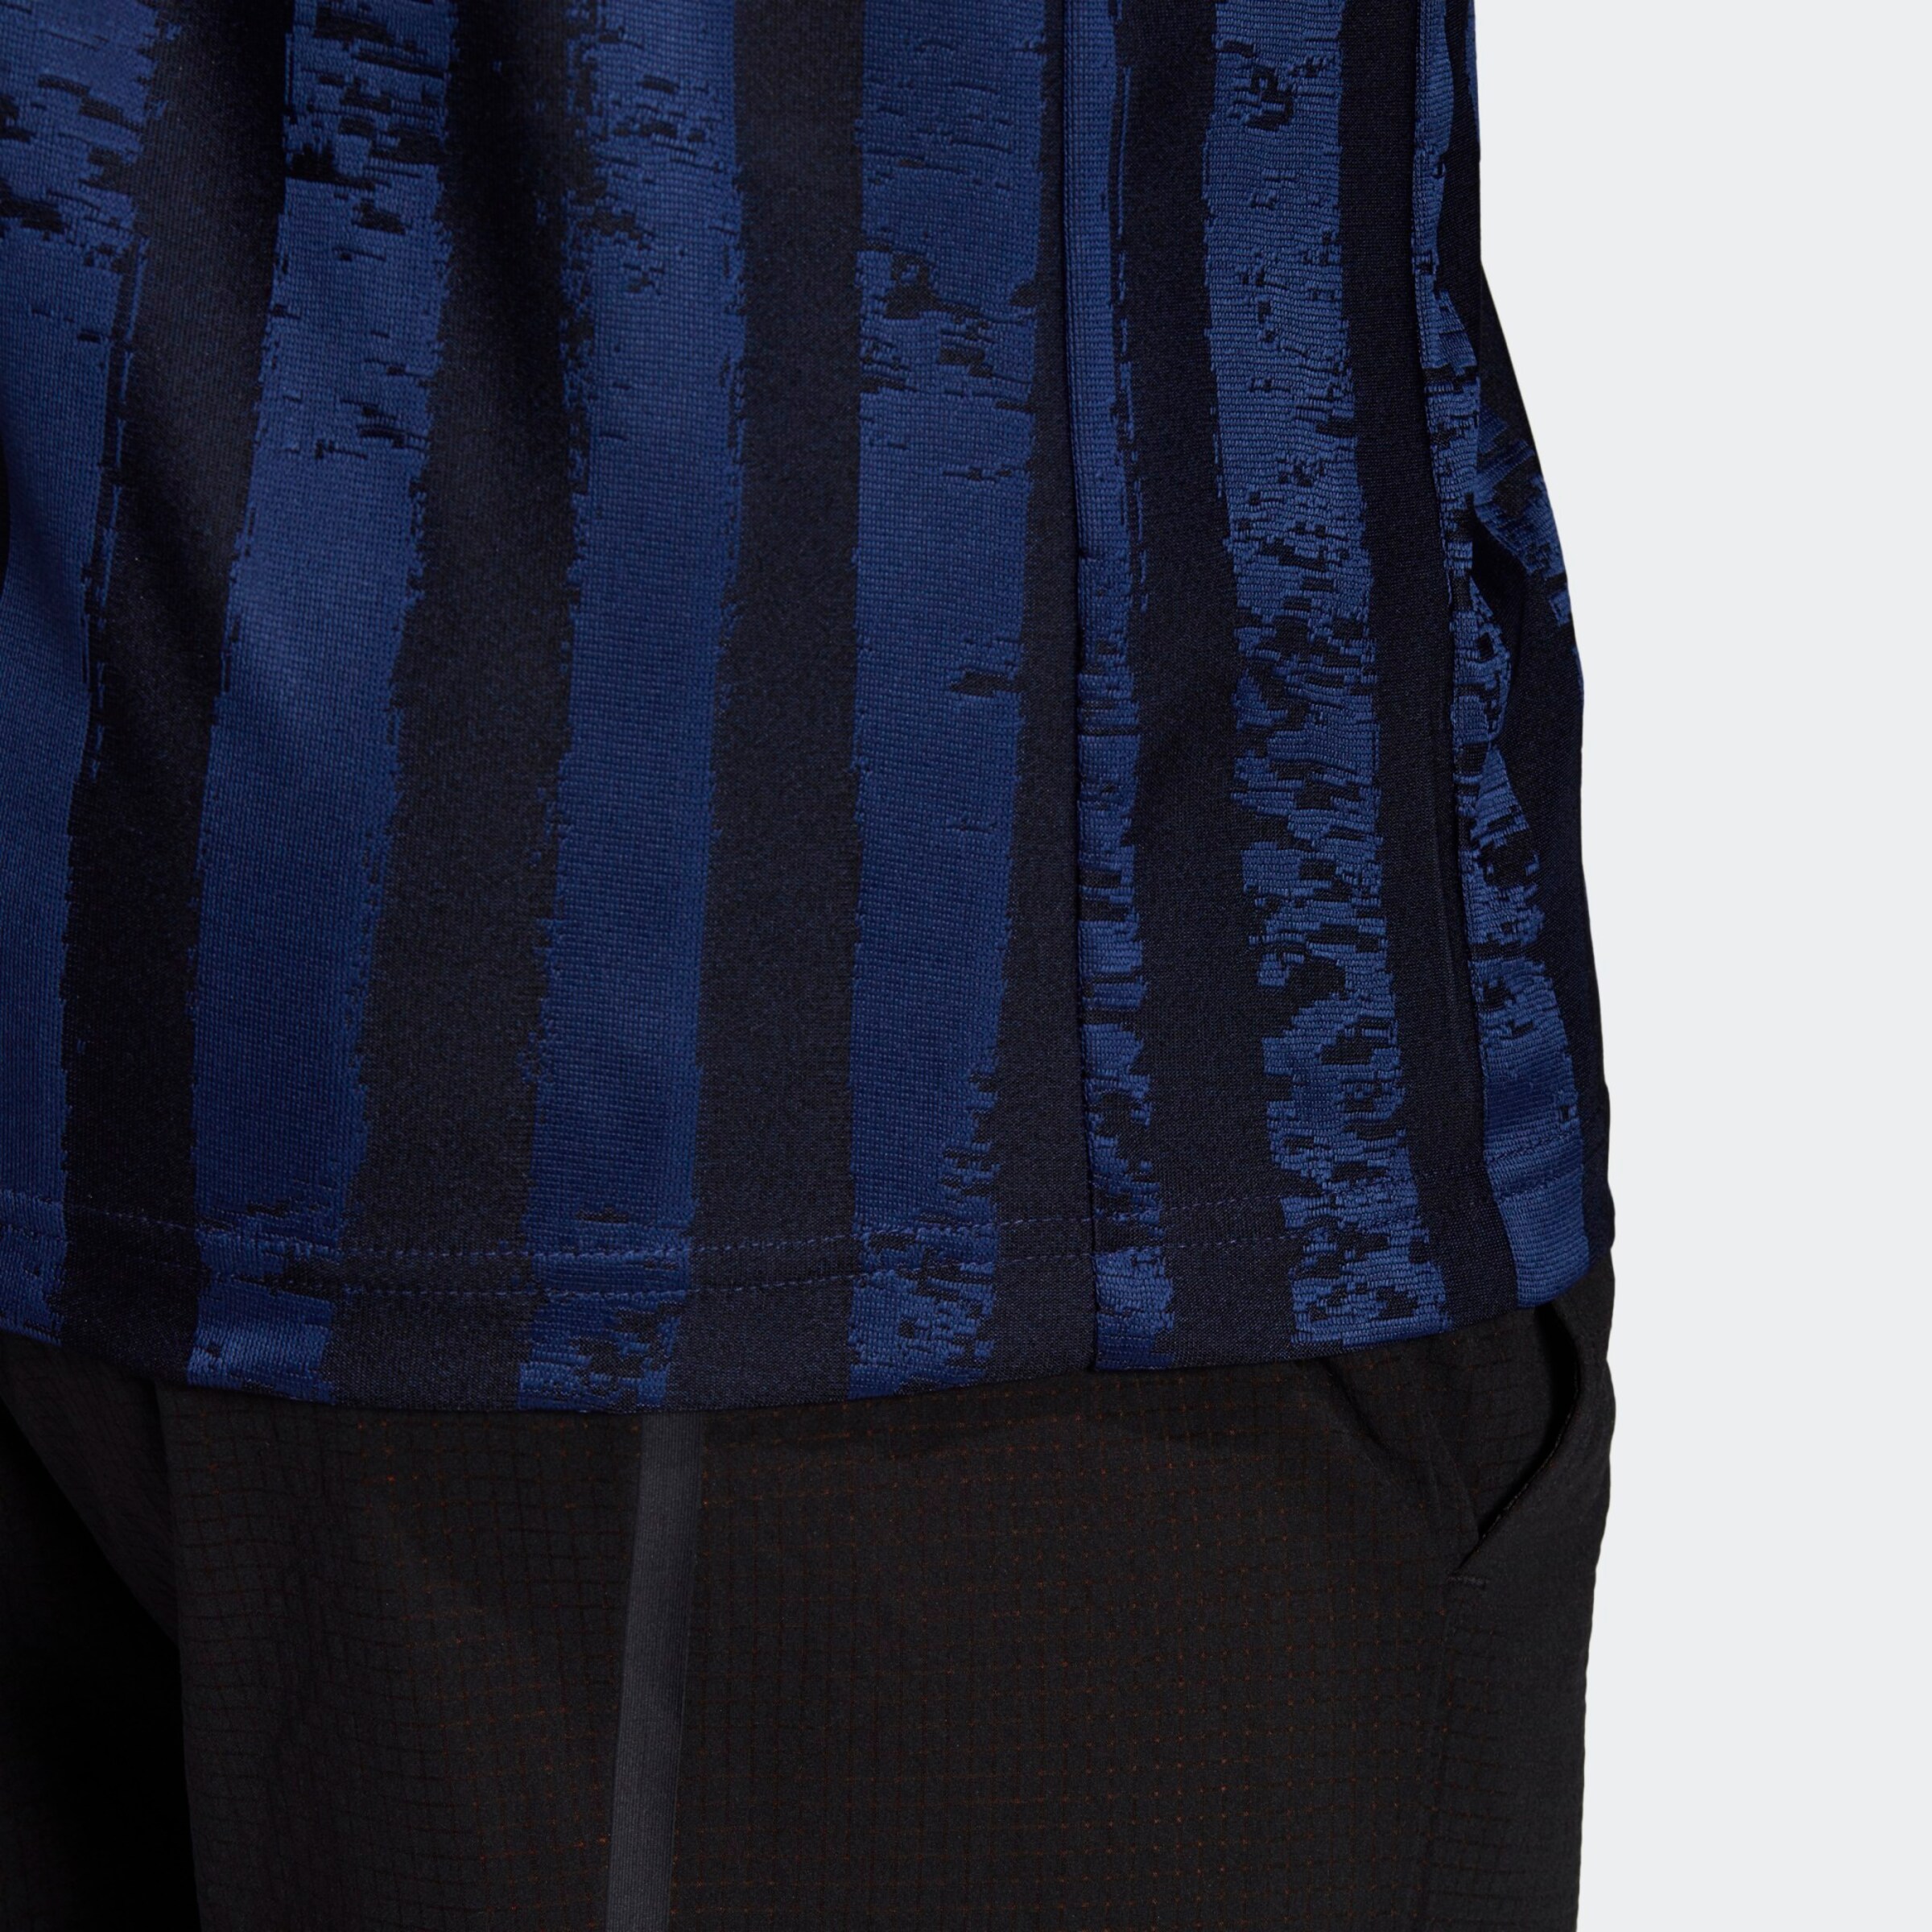 Homme T-Shirt fonctionnel ADIDAS PERFORMANCE en Bleu Nuit, Saphir 